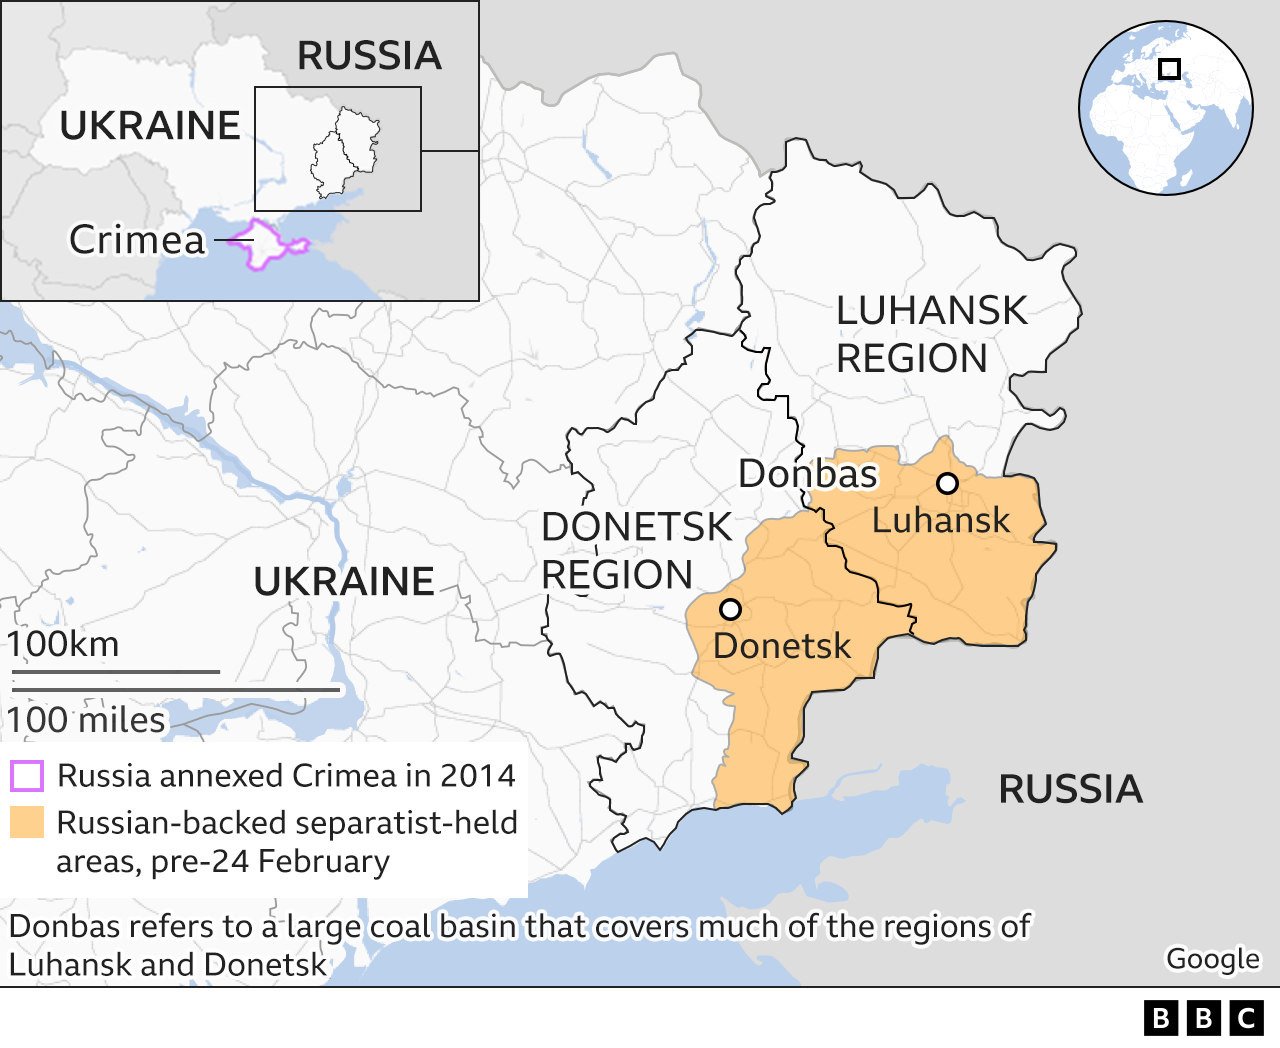 Map of Donbas